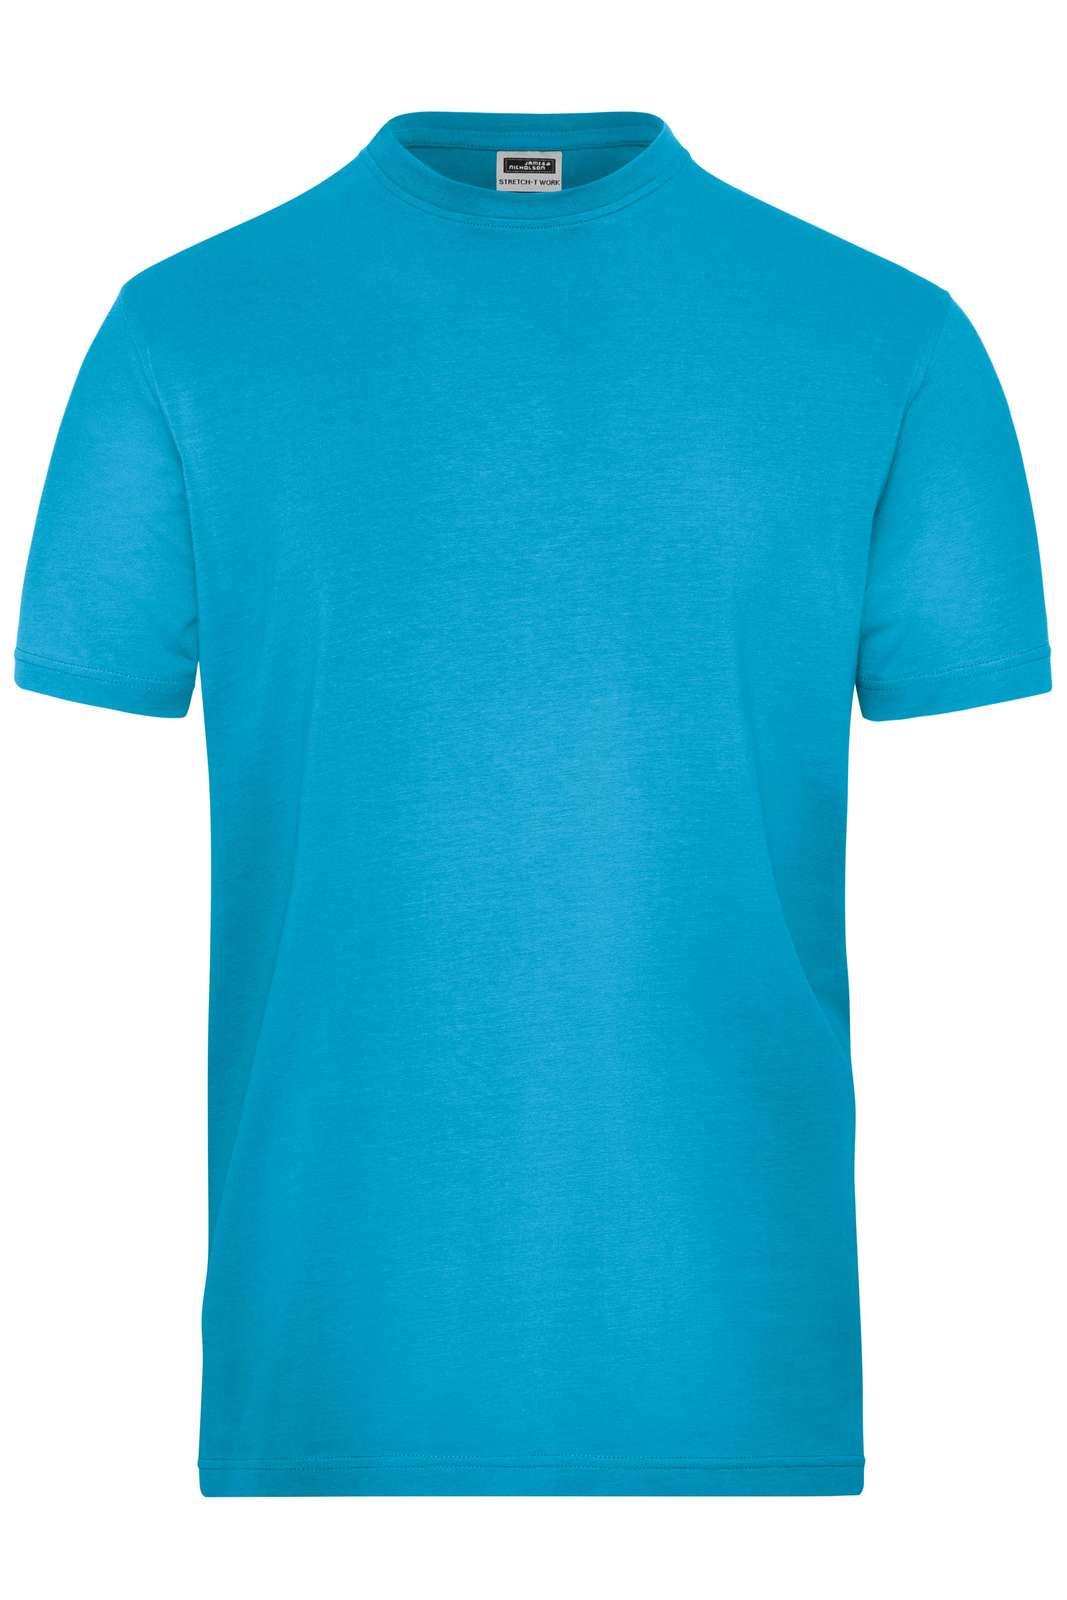 JN BIO STRETCH T-SHIRTS - Arbejds T-shirt - JA Profil 